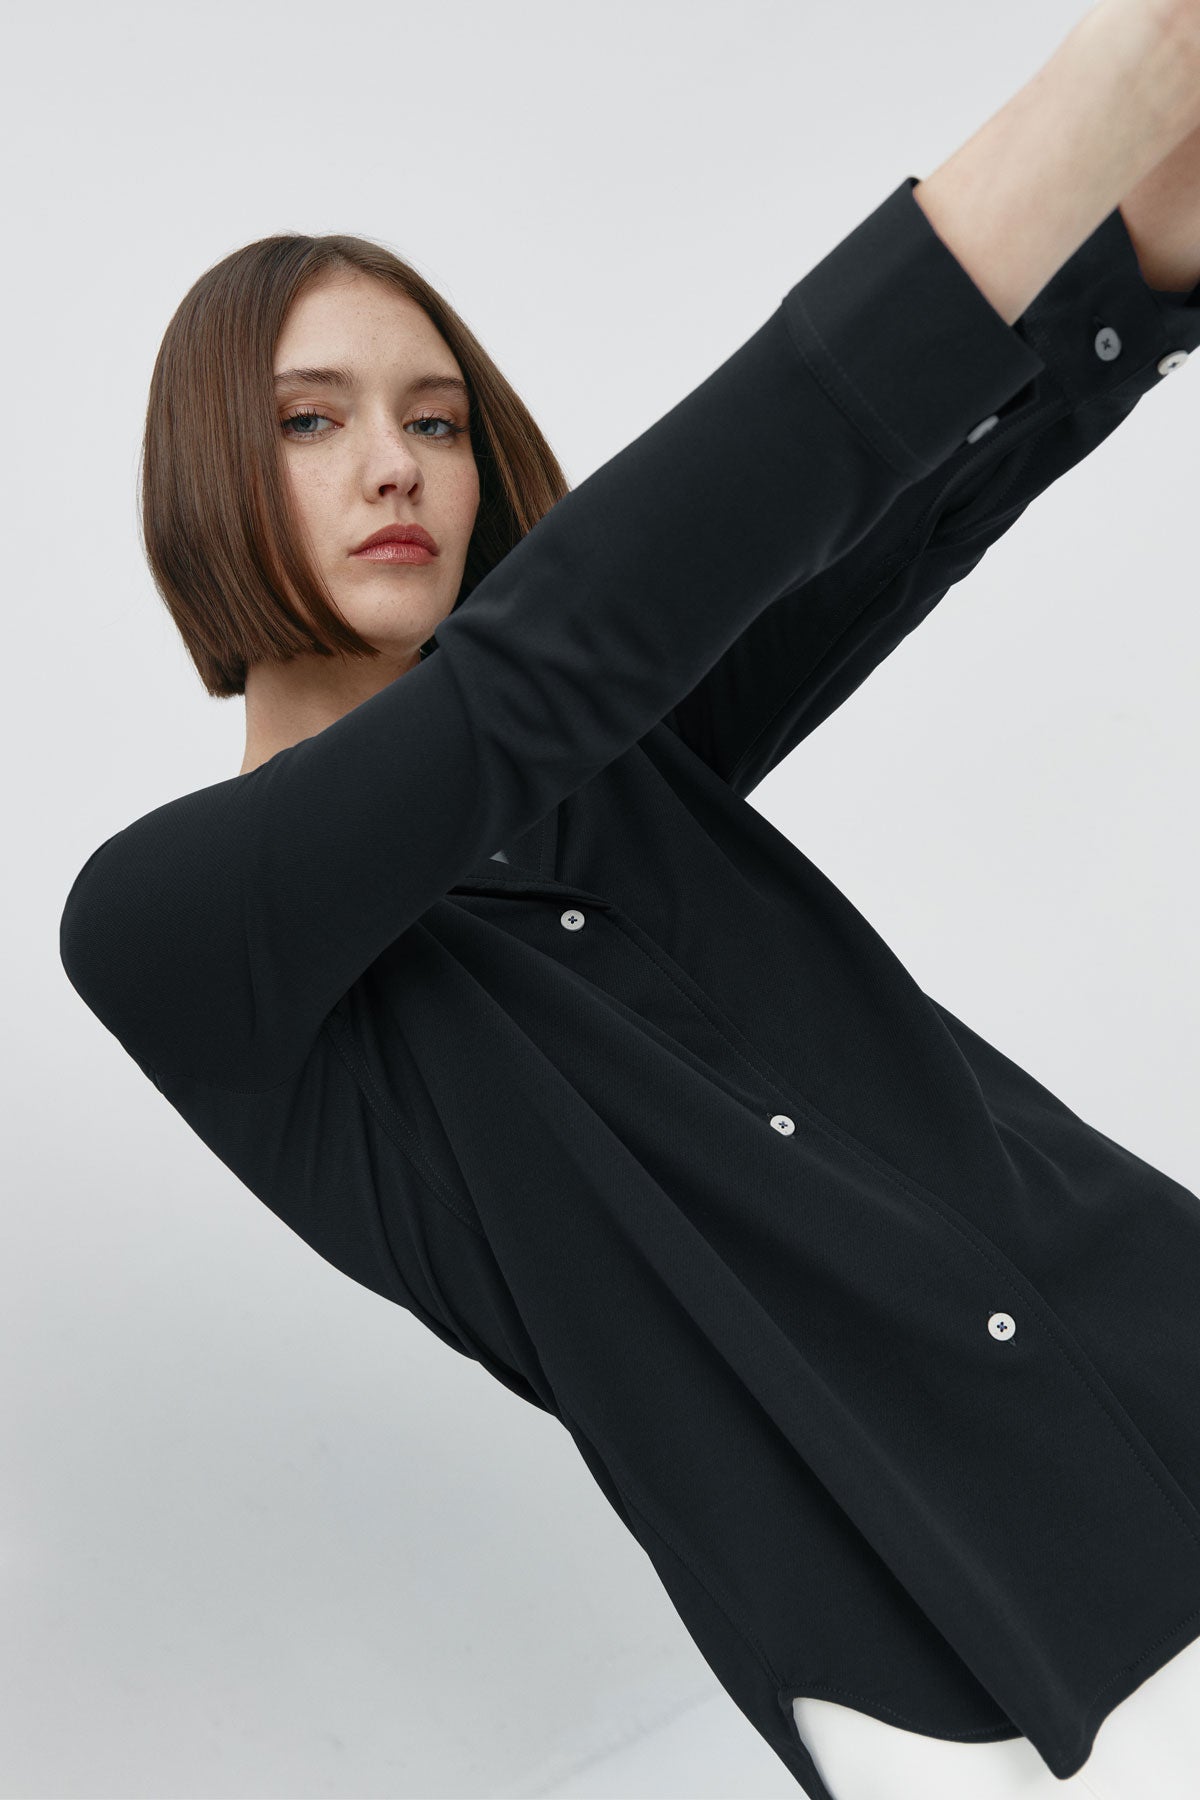 Camisa bowling de mujer negra de Sepiia, estilo y versatilidad en una prenda cómoda y resistente. Foto flexibilidad